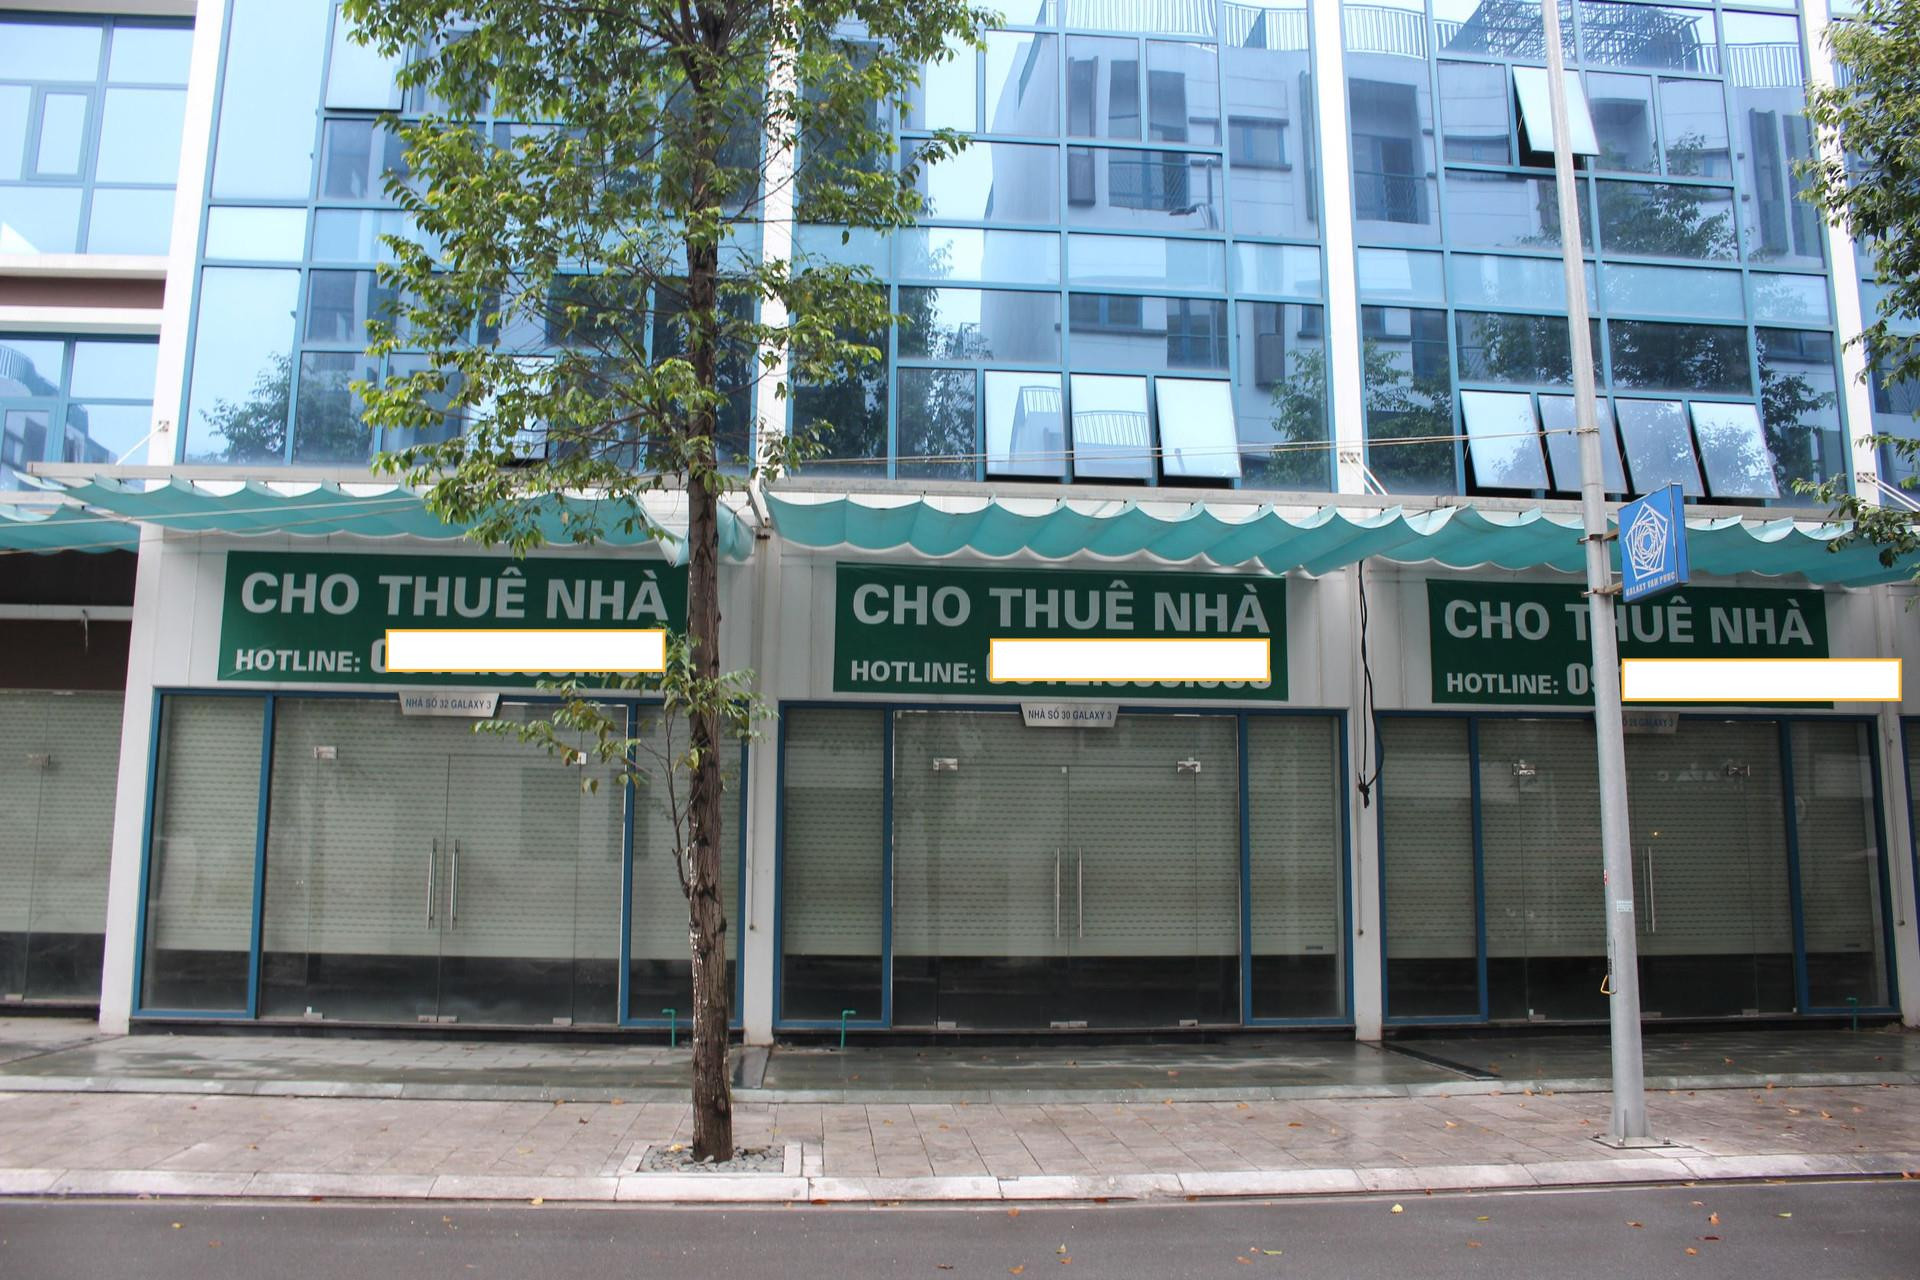 Mua shophouse Hà Nội giá 30 tỷ, cho thuê mỗi tháng vài chục triệu đồng/tháng, “giật mình” nhẩm tính tỷ suất lợi nhuận chưa đến 1% - Ảnh 8.